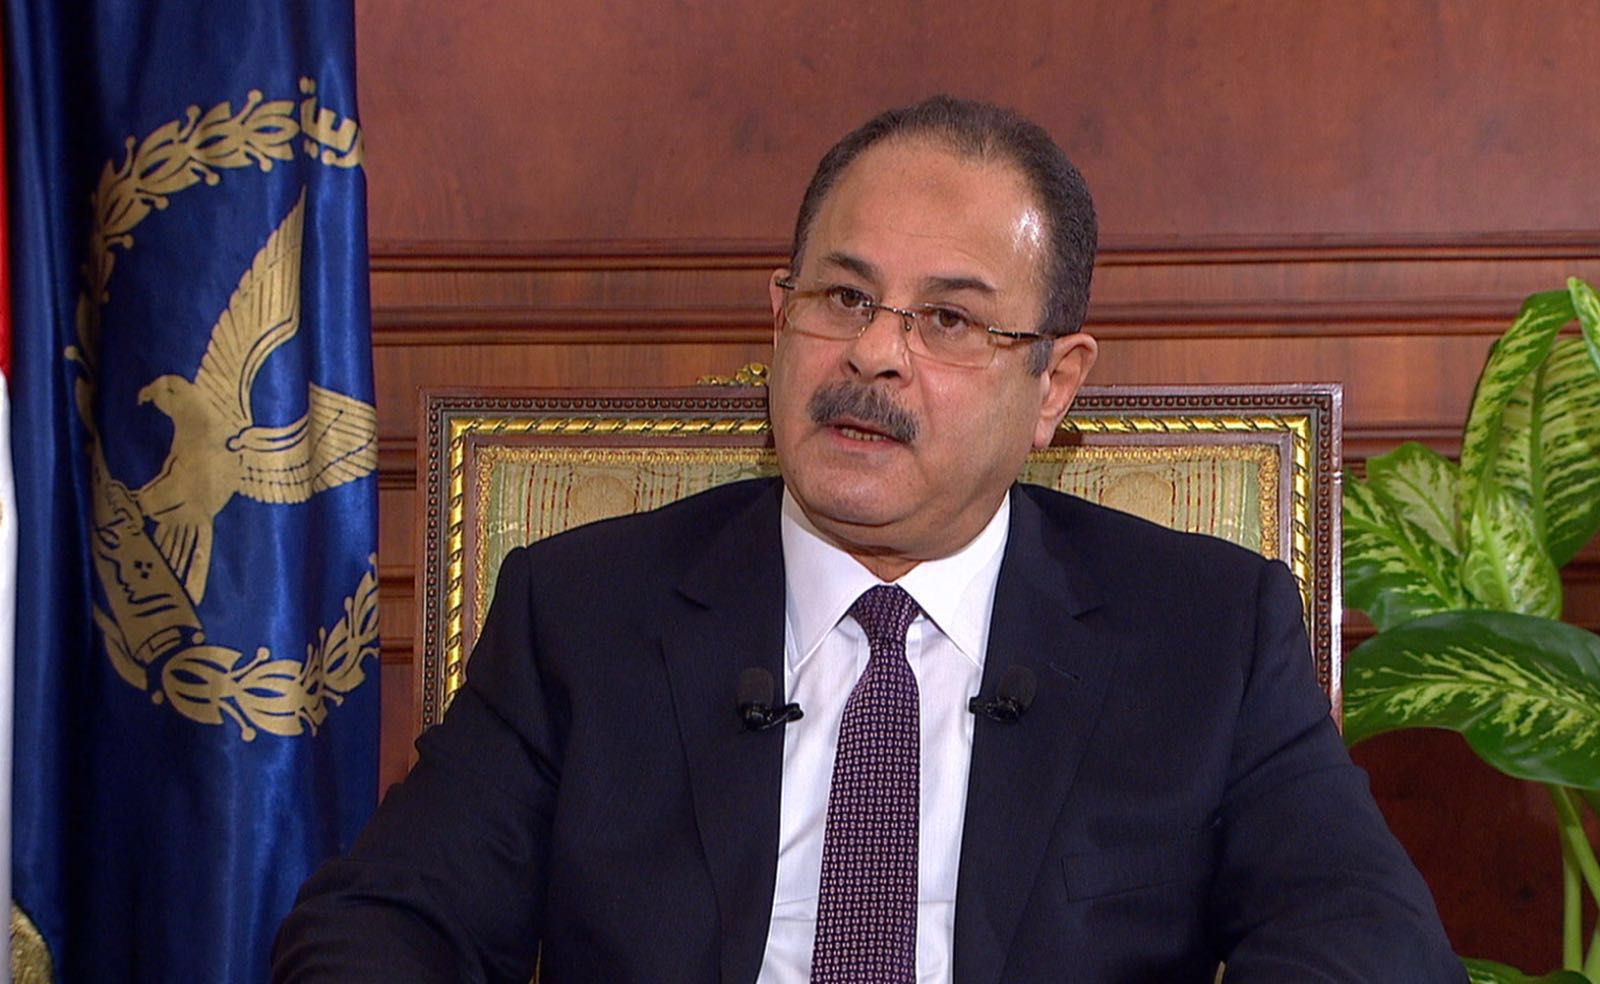   وزير الداخلية يجرى حركة تنقلات بمحافظة المنيا